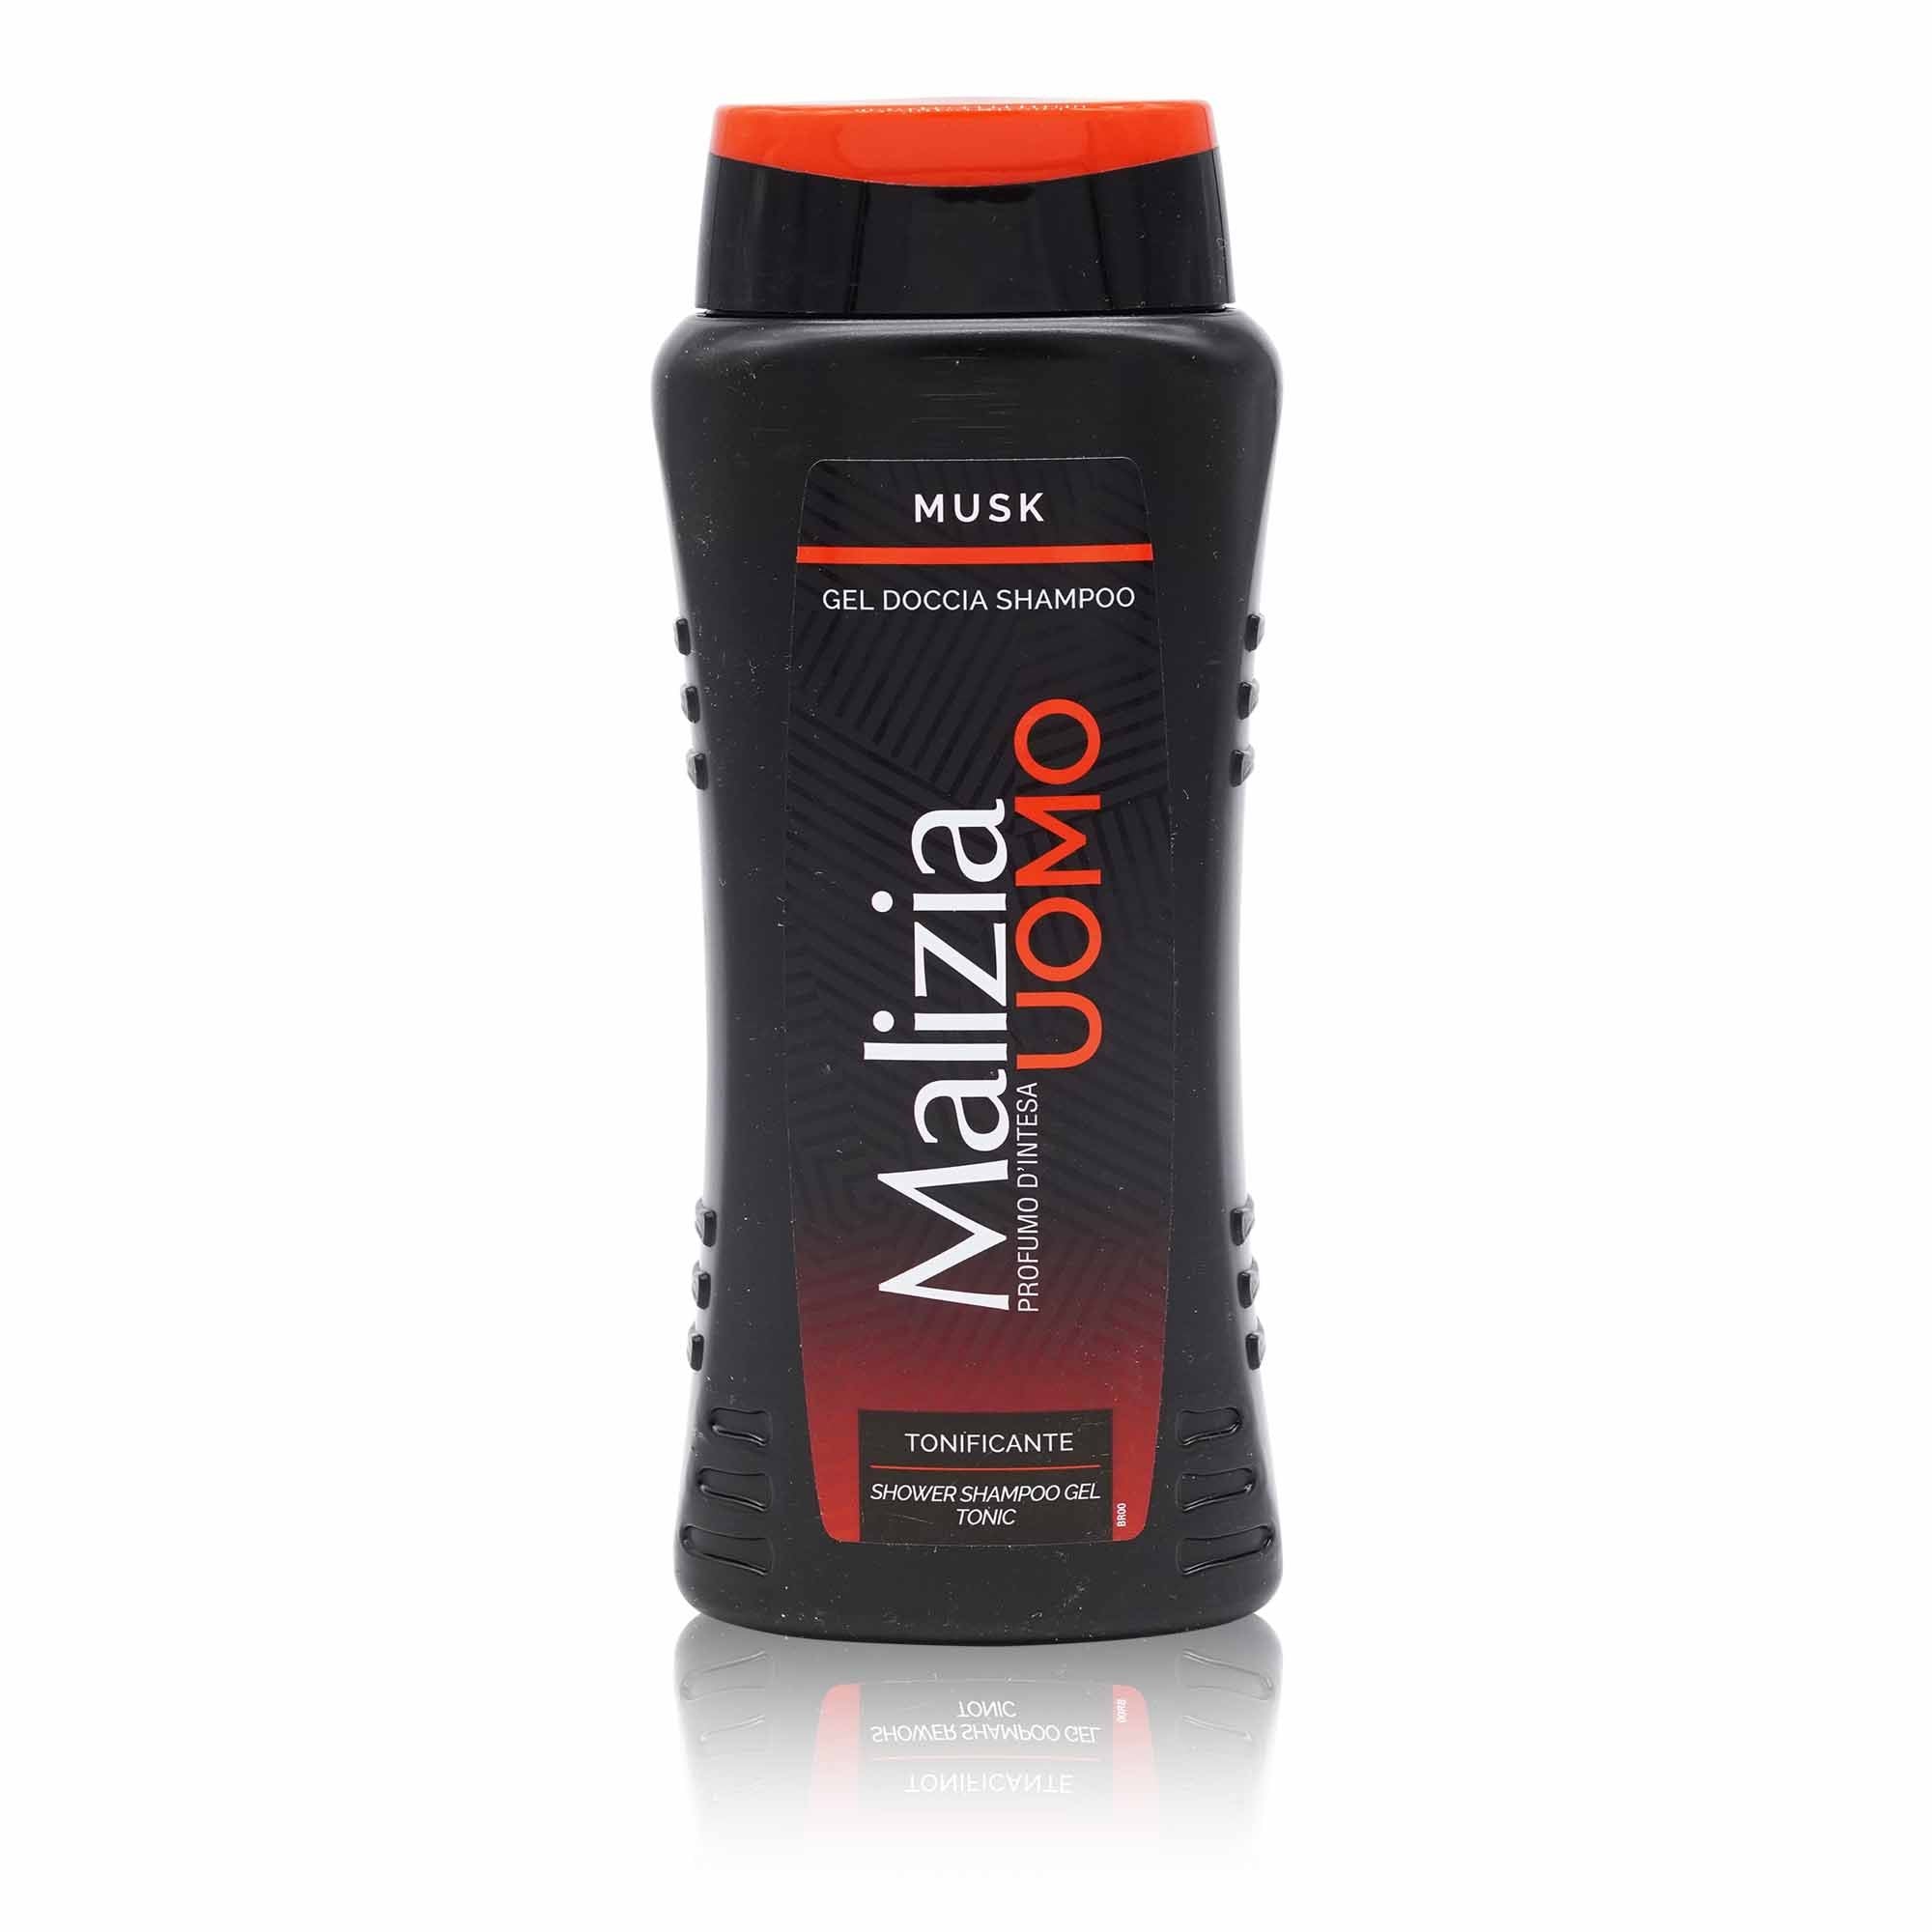 MALIZIA Doccia Shampoo Gel Uomo – Herren Duschgel-Shampoo Musk - 0,250l - italienisch-einkaufen.de